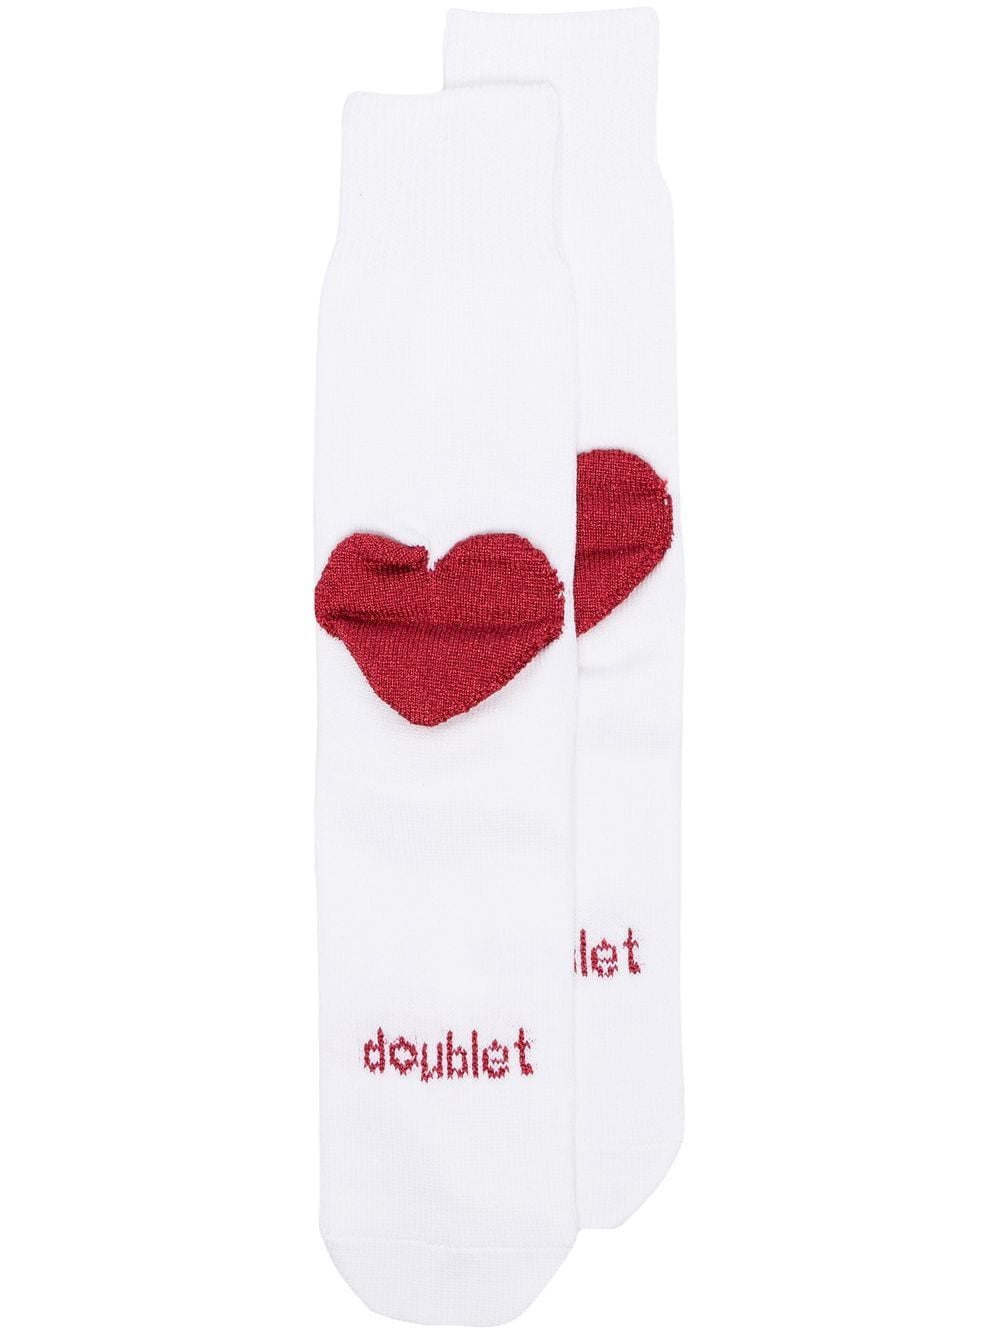 Doublet metallic thread heart socks - White von Doublet